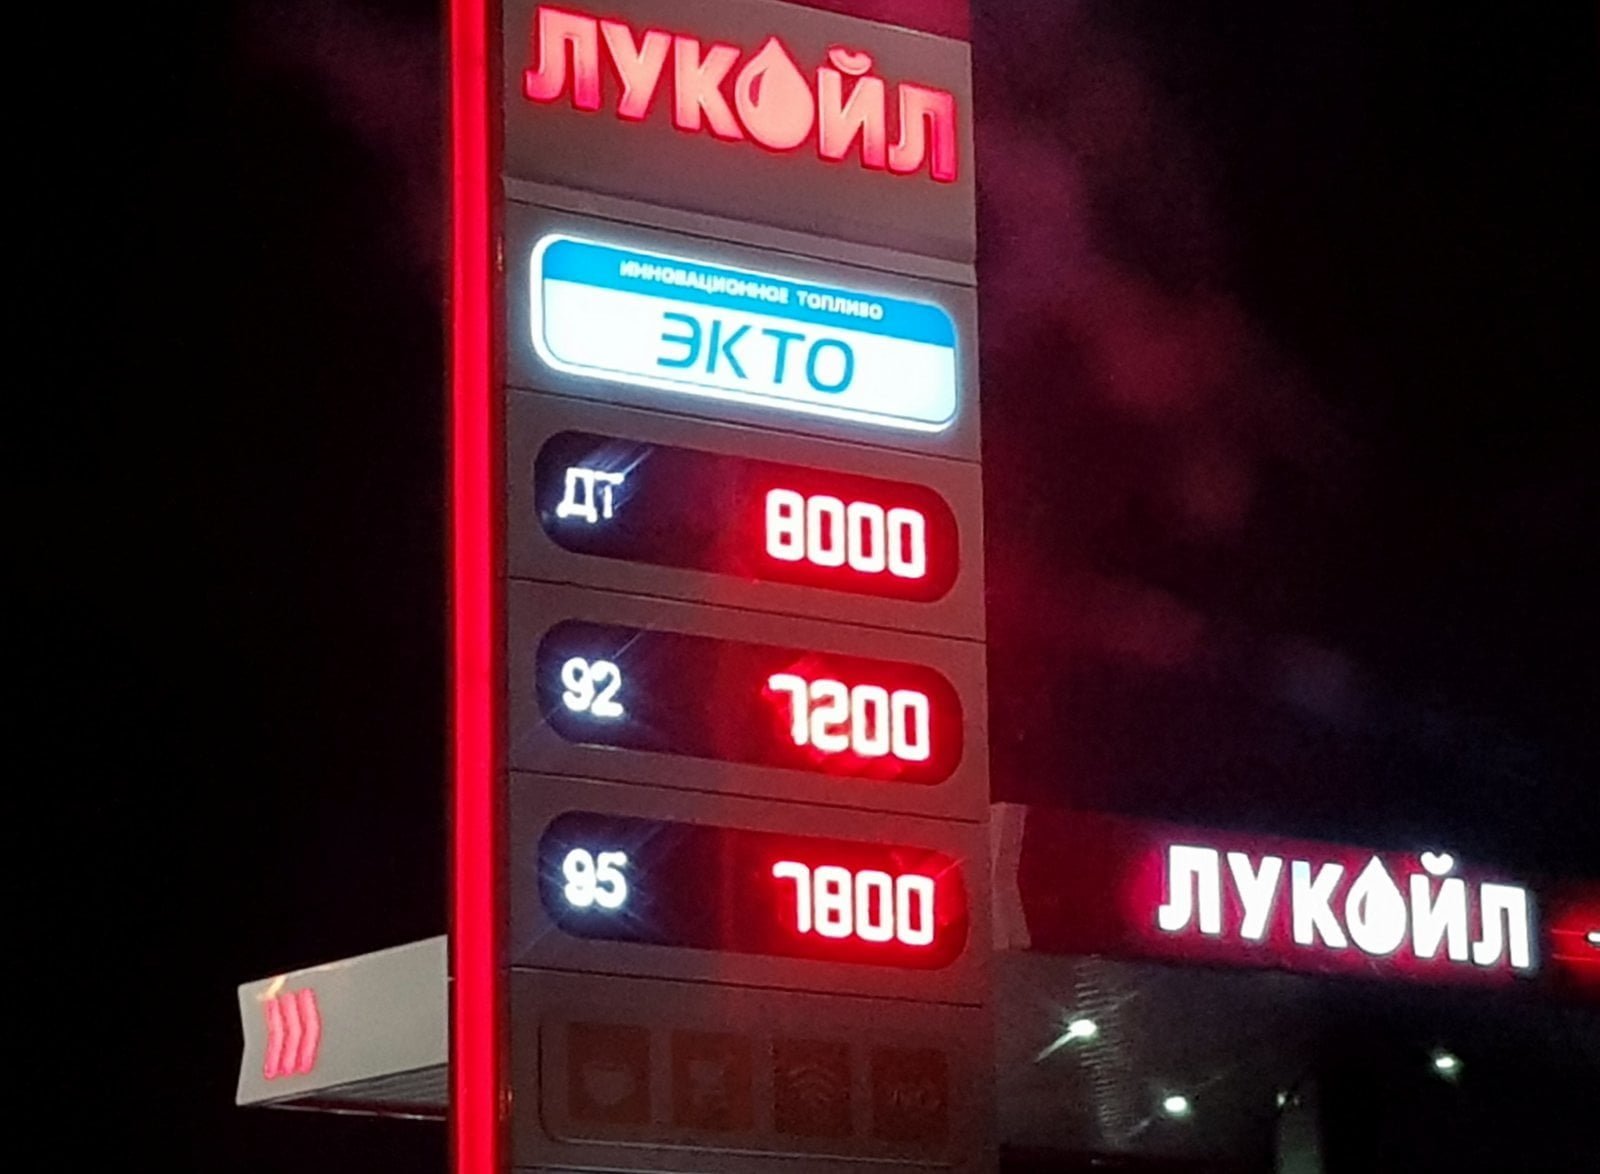 цена бензина на АЗС Лукойл в Ташкенте